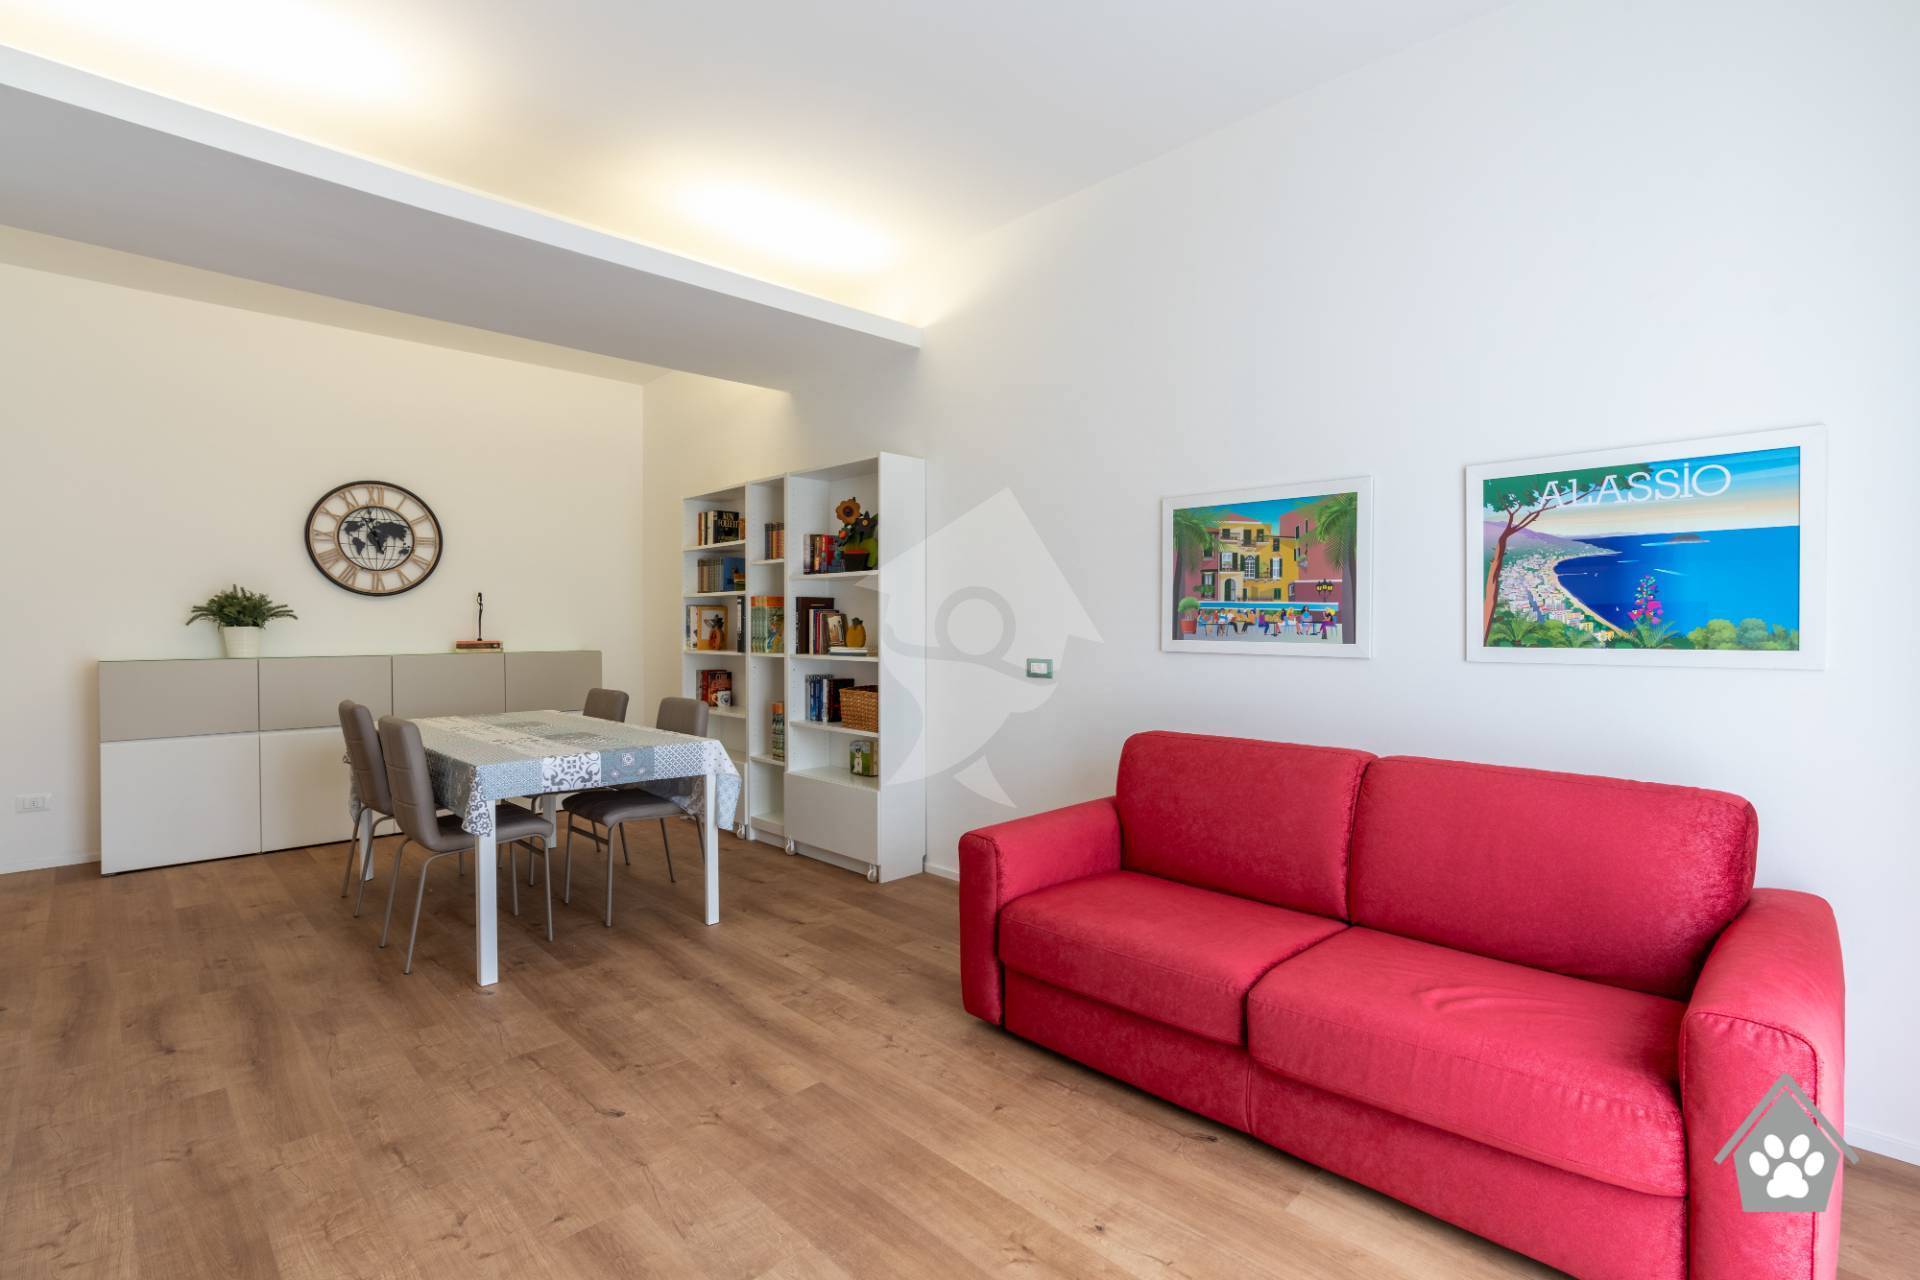 Appartamento in affitto a Alassio, 4 locali, prezzo € 850 | PortaleAgenzieImmobiliari.it